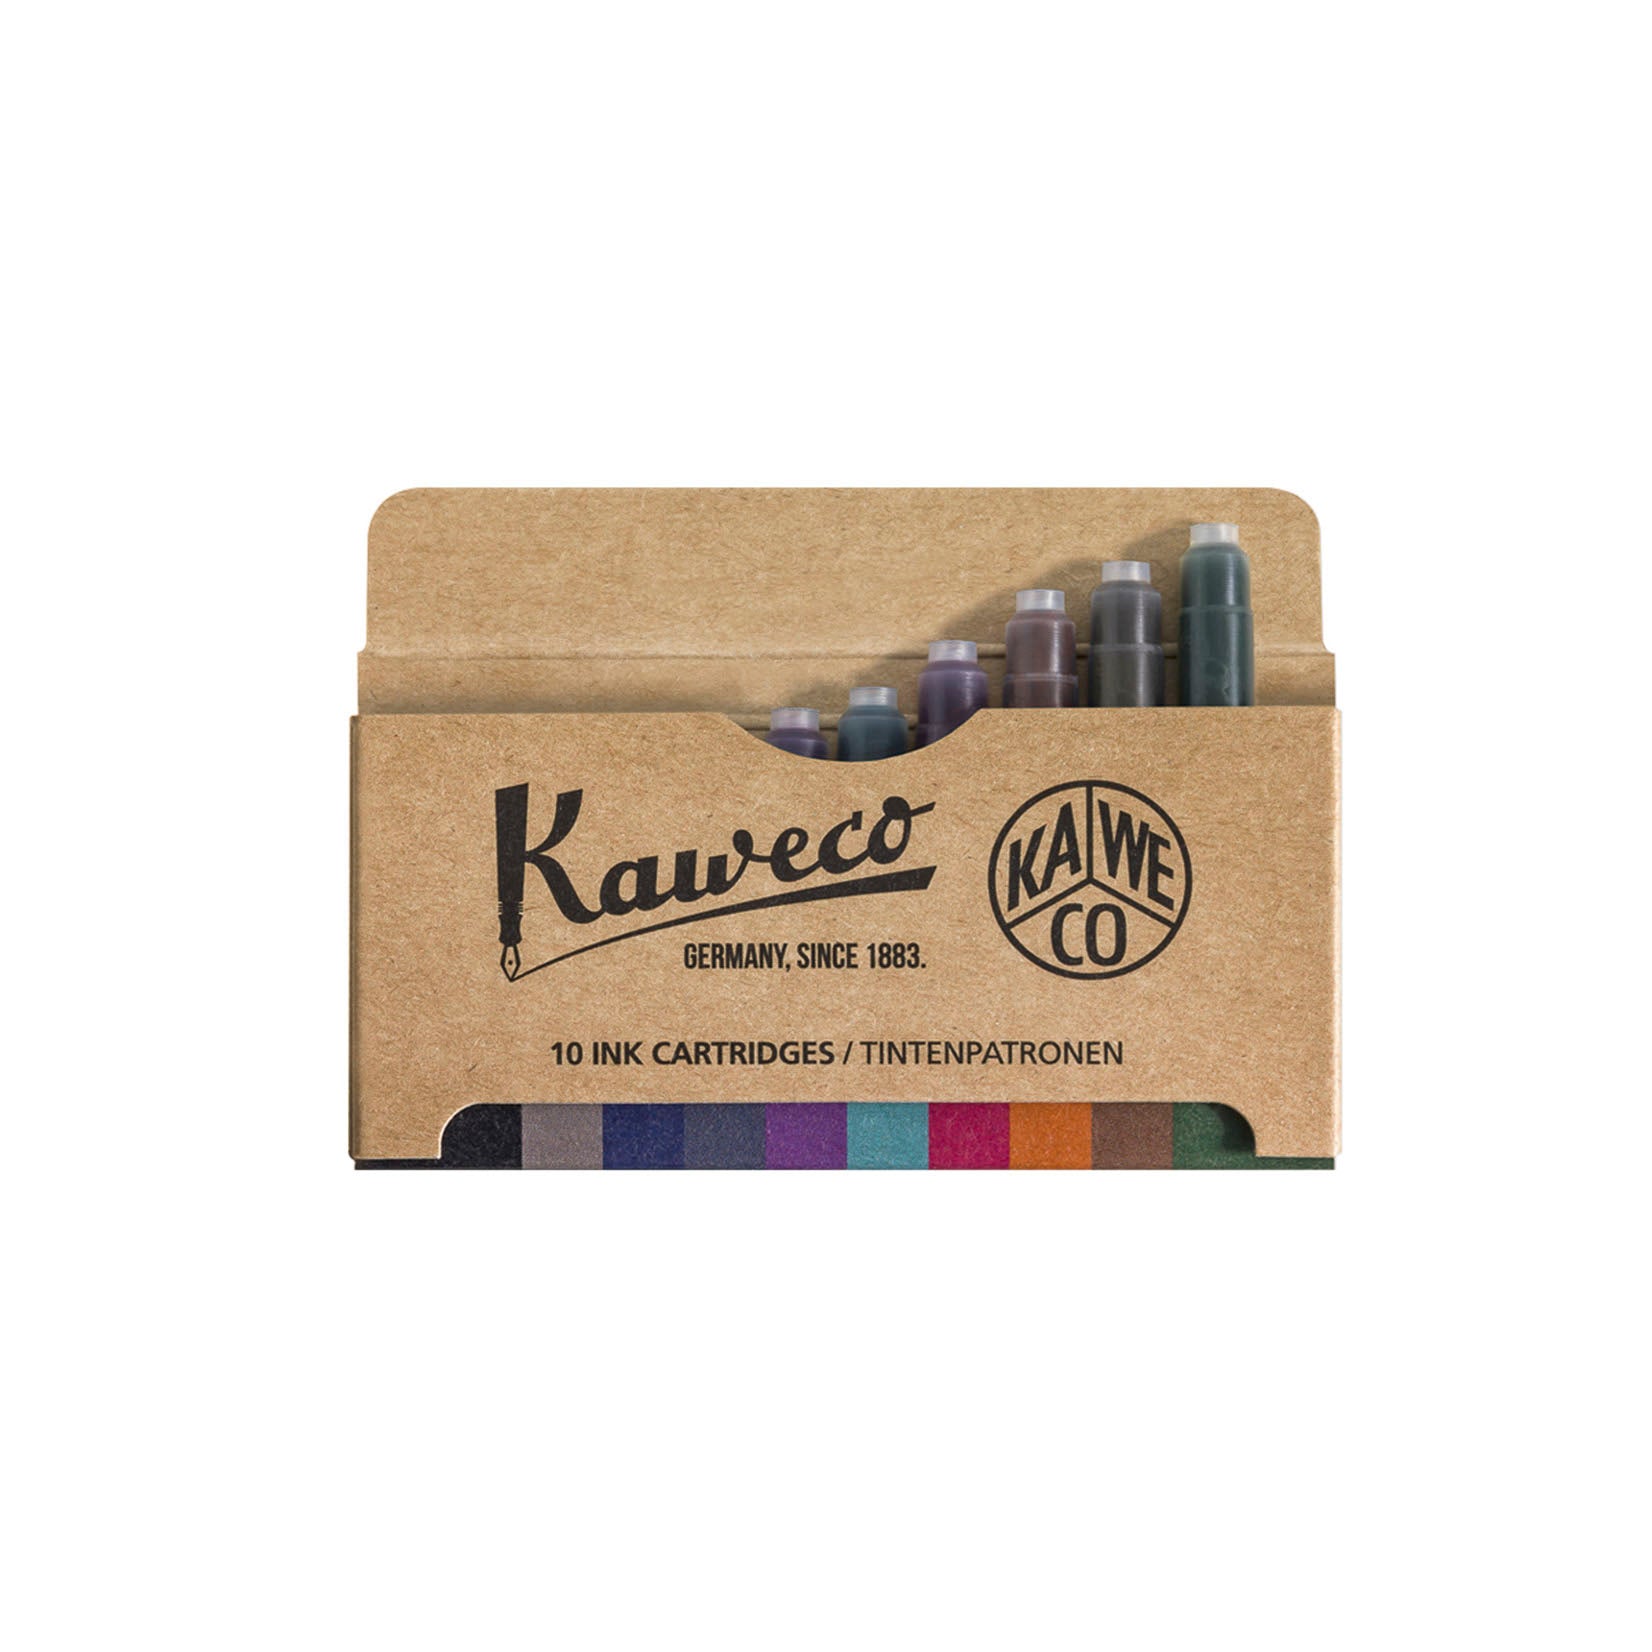 Kaweco Füllerpatronen für Füllhalter Füller Tintenpatronen Tinte Set gemischte Farben bunt